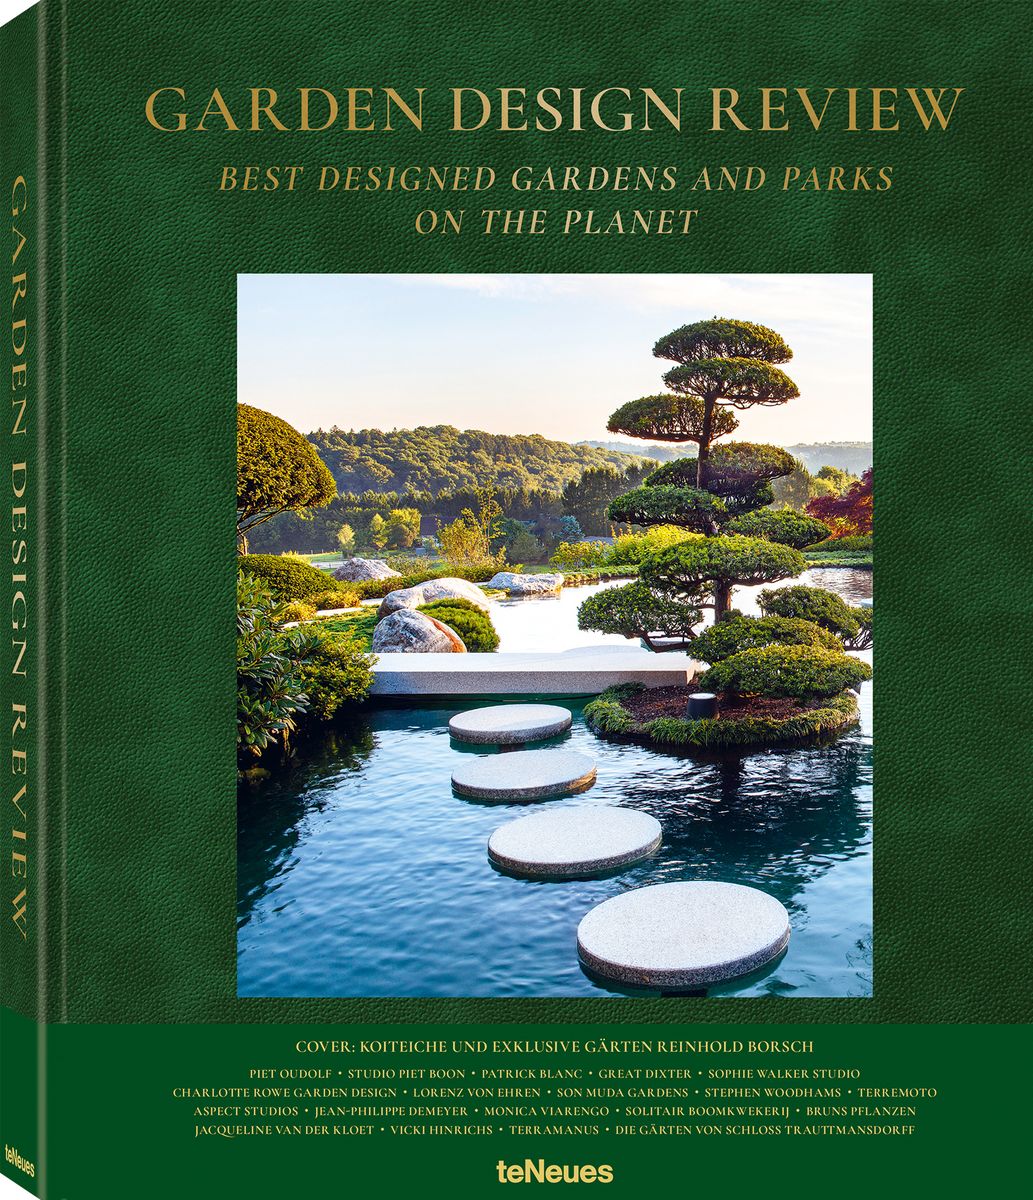 Garden Design Review von R. Knoflach   Buch   Thalia